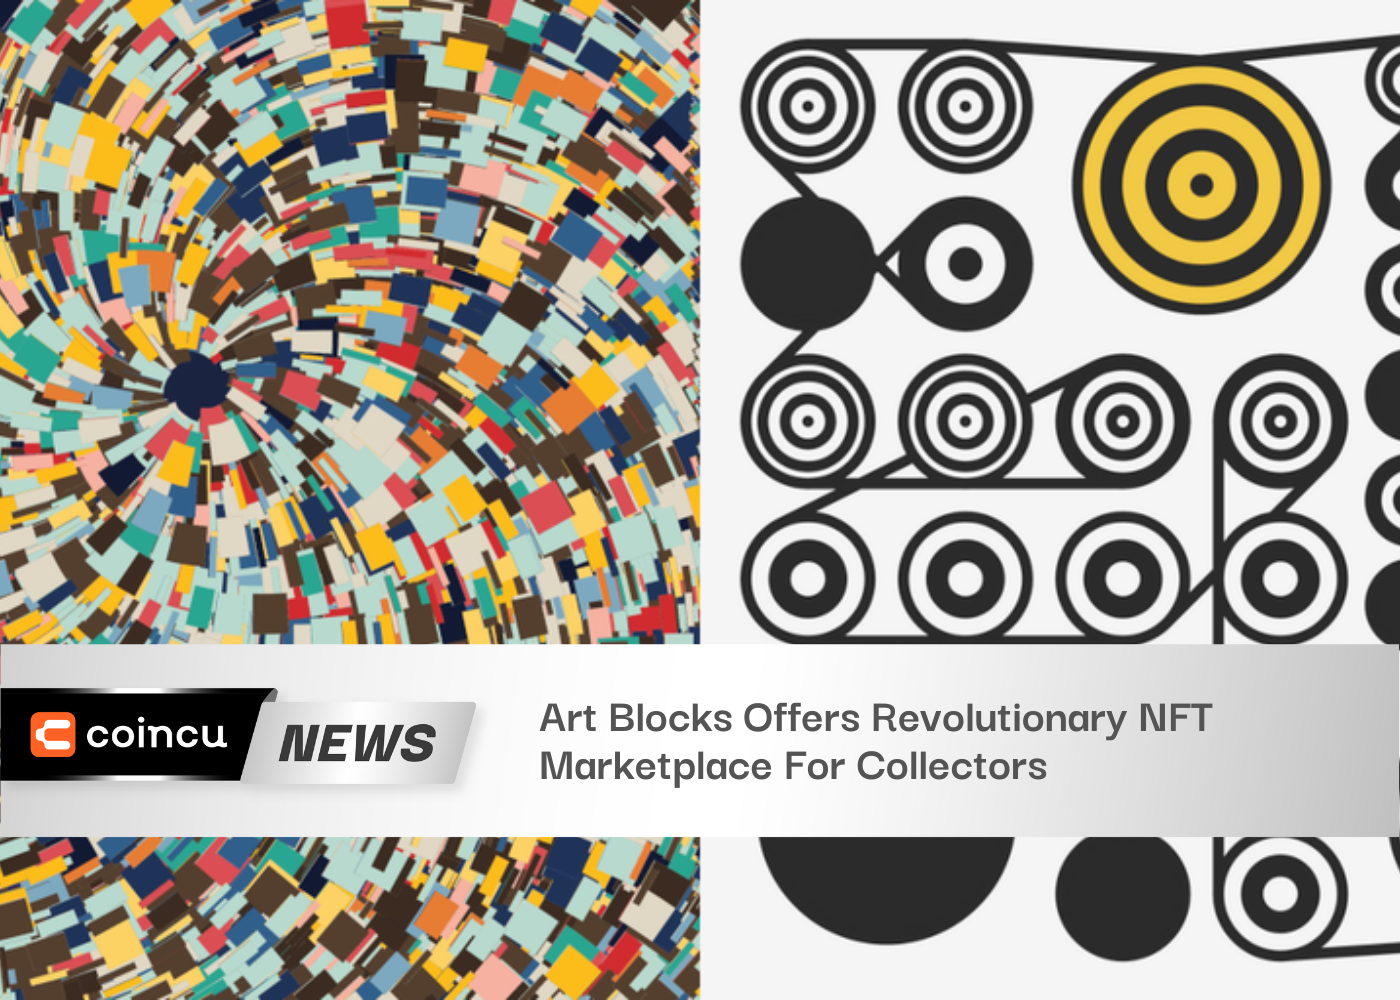 Art Blocks propose un marché NFT révolutionnaire pour les collectionneurs